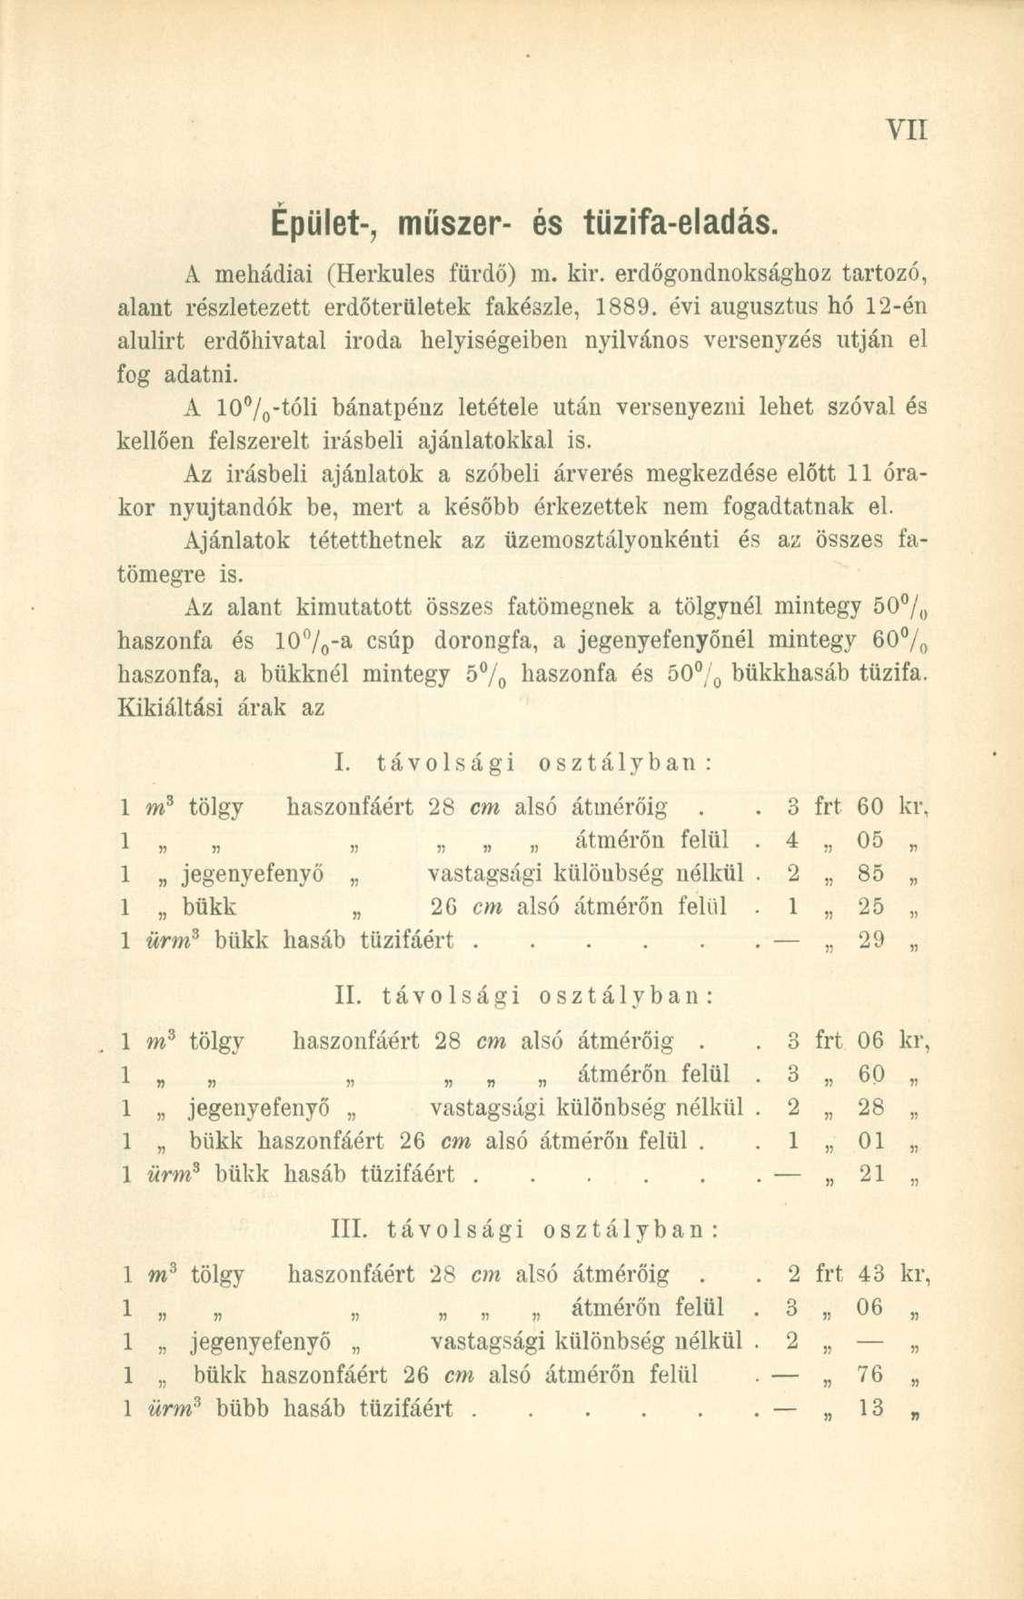 Épület-, műszer- és tűzifa-eladás. A mehádiai (Herkules fürdő) m. kir. erdőgondnoksághoz tartozó, alant részletezett erdőterületek fakészle, 1889.